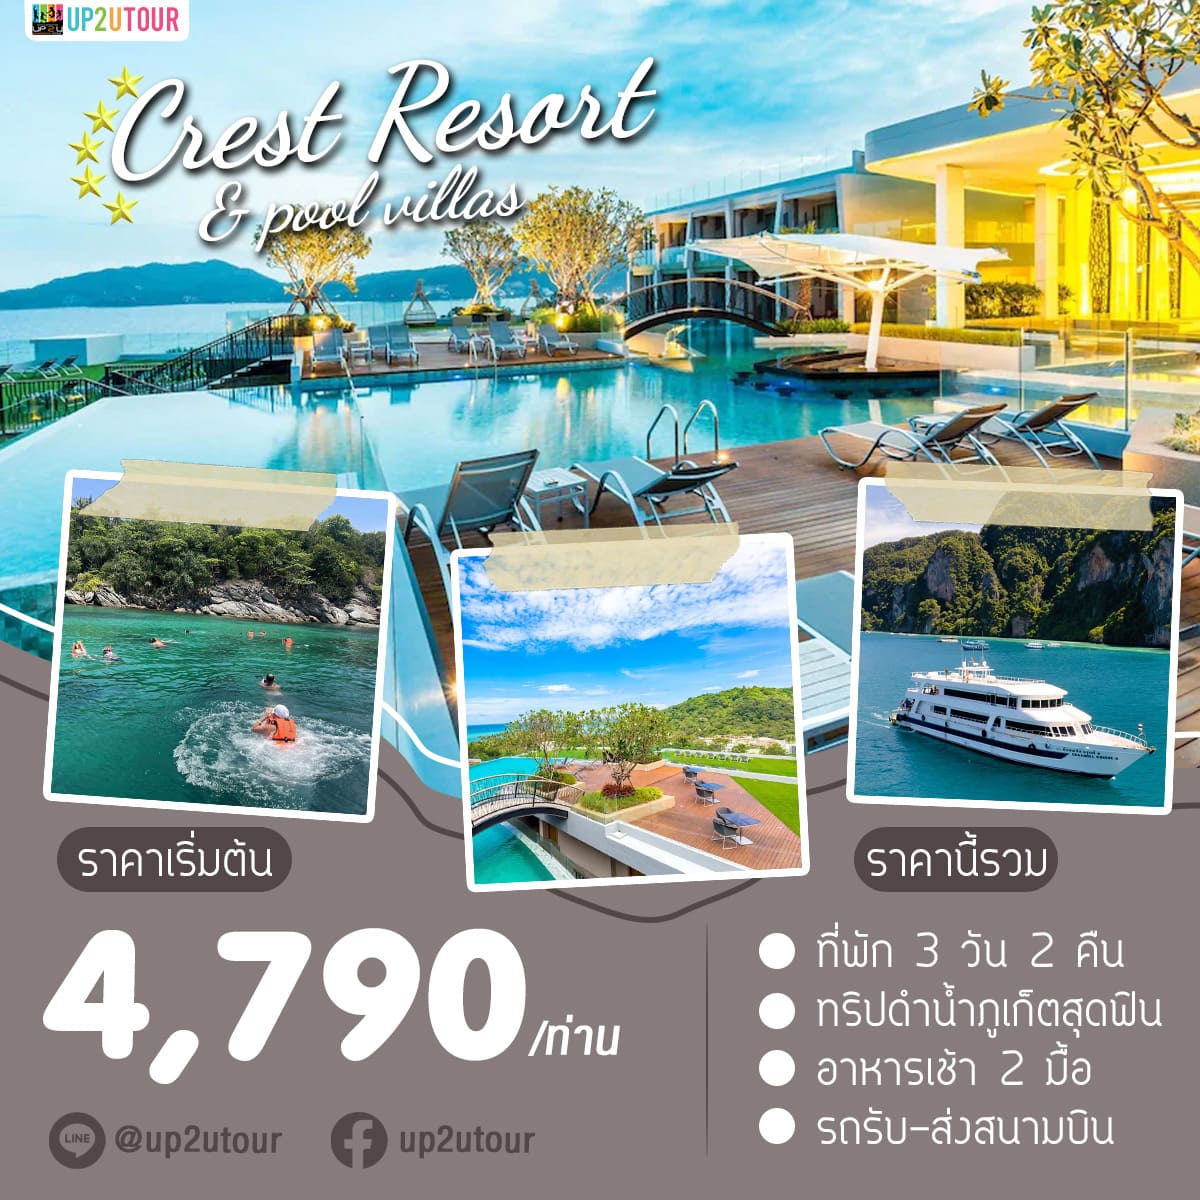 Crest Resort ภูเก็ต ราคาเริ่มต้นที่ 4,790 บาท/ท่าน